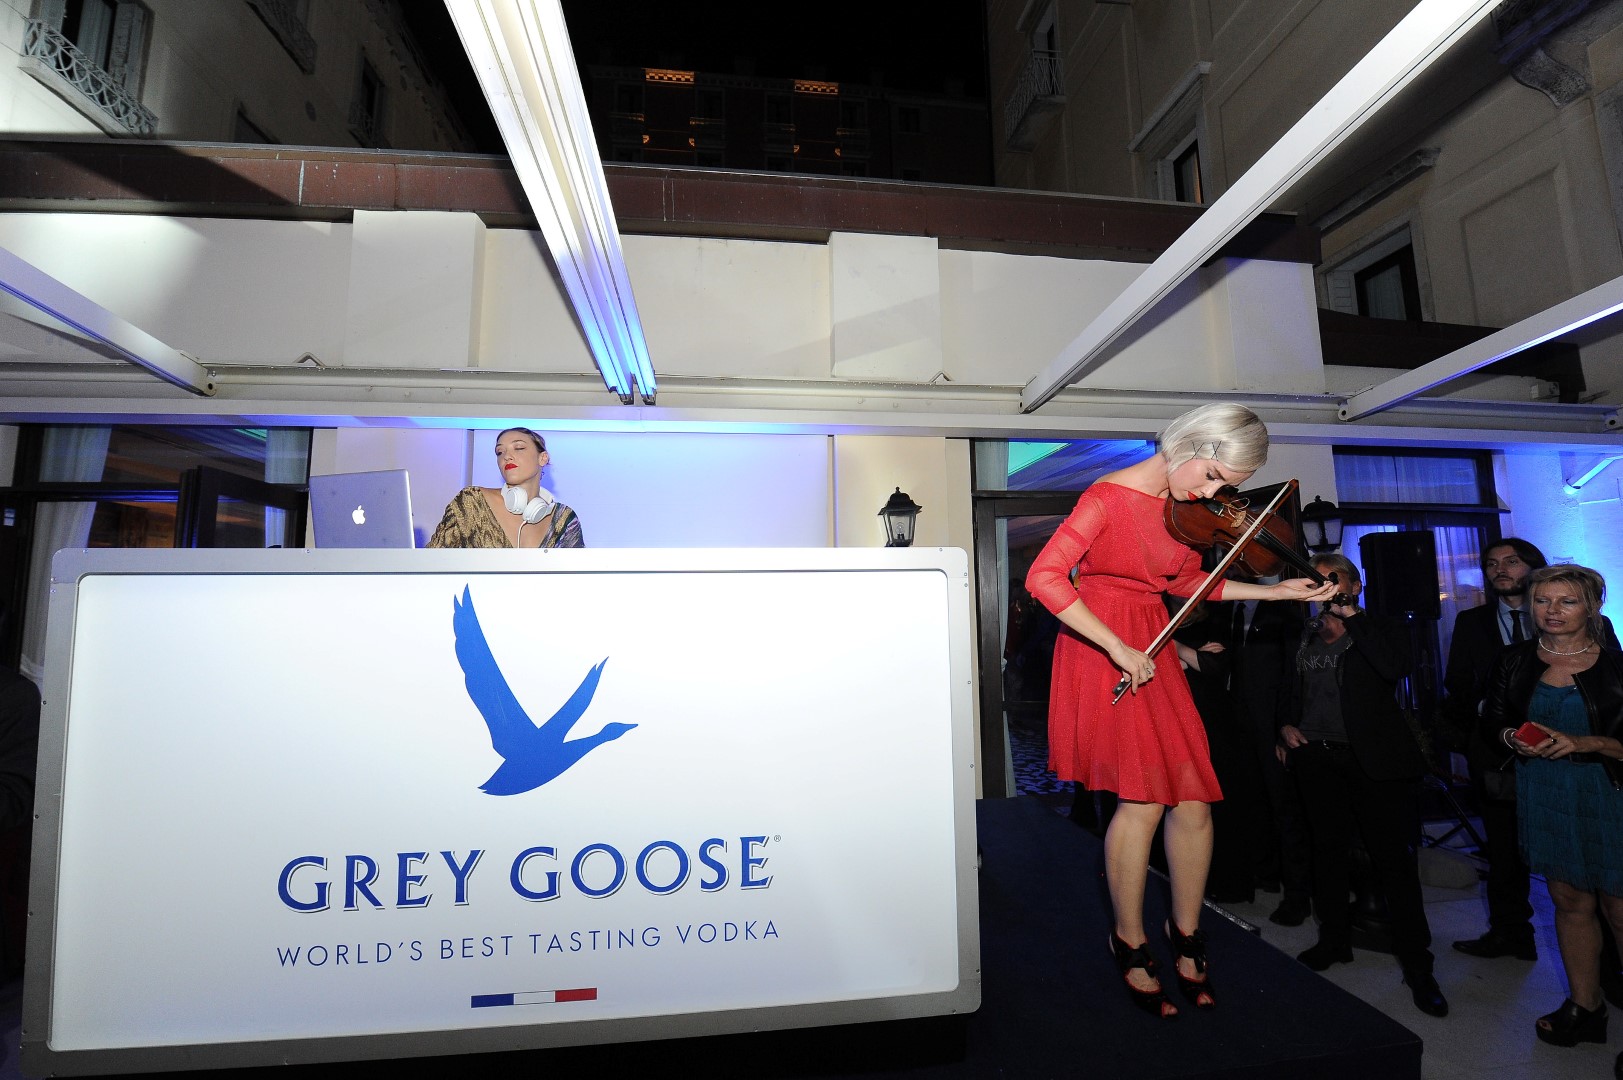 Festival Cinema Venezia 2015: il WOW party di Grey Goose e Vanity Fair, le foto